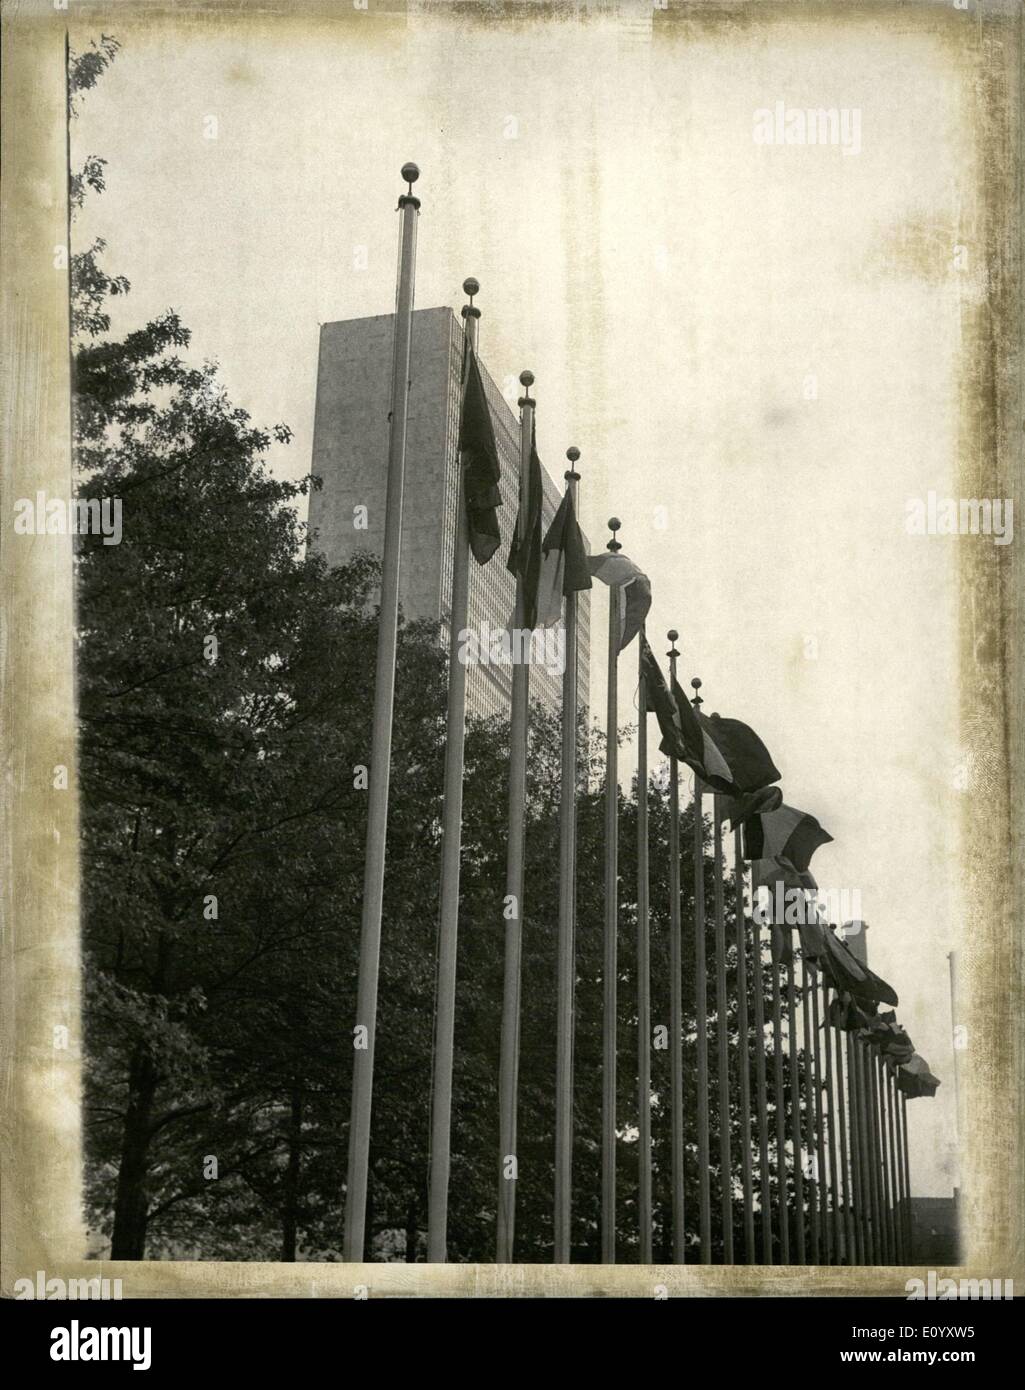 Ottobre 10, 1971 - un pennone è vuoto Il Partito nazionalista bandiera cinese non è più sollevato presso le Nazioni Unite in quanto l'espulsione. Foto Stock